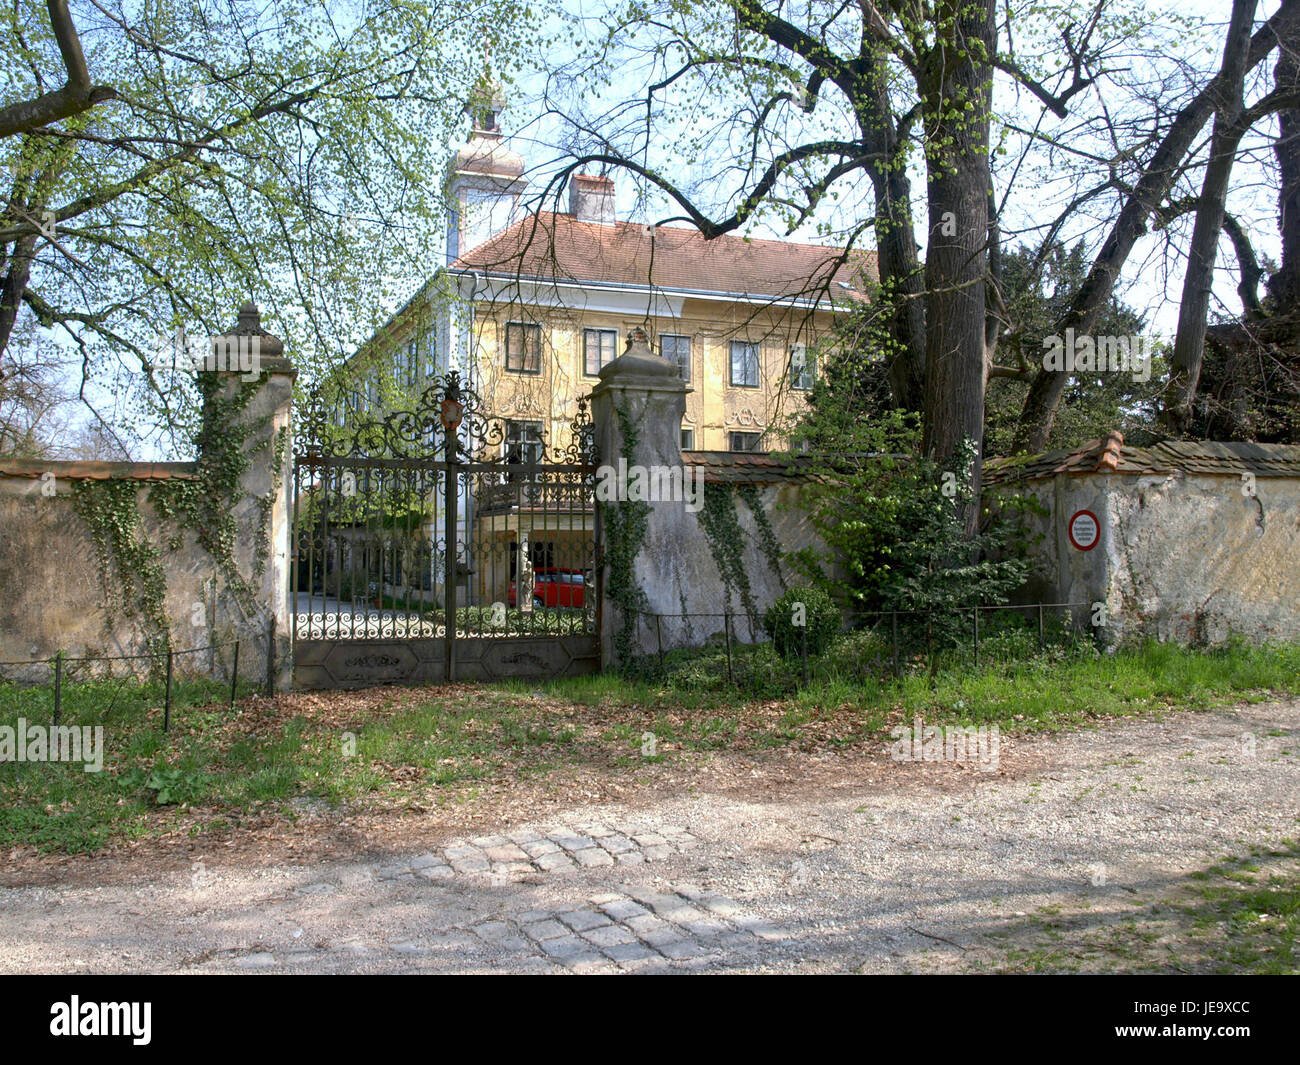 2013.04.24 - Haidershofen - Schlossanlage Dorf an der Enns - 01 Stock Photo